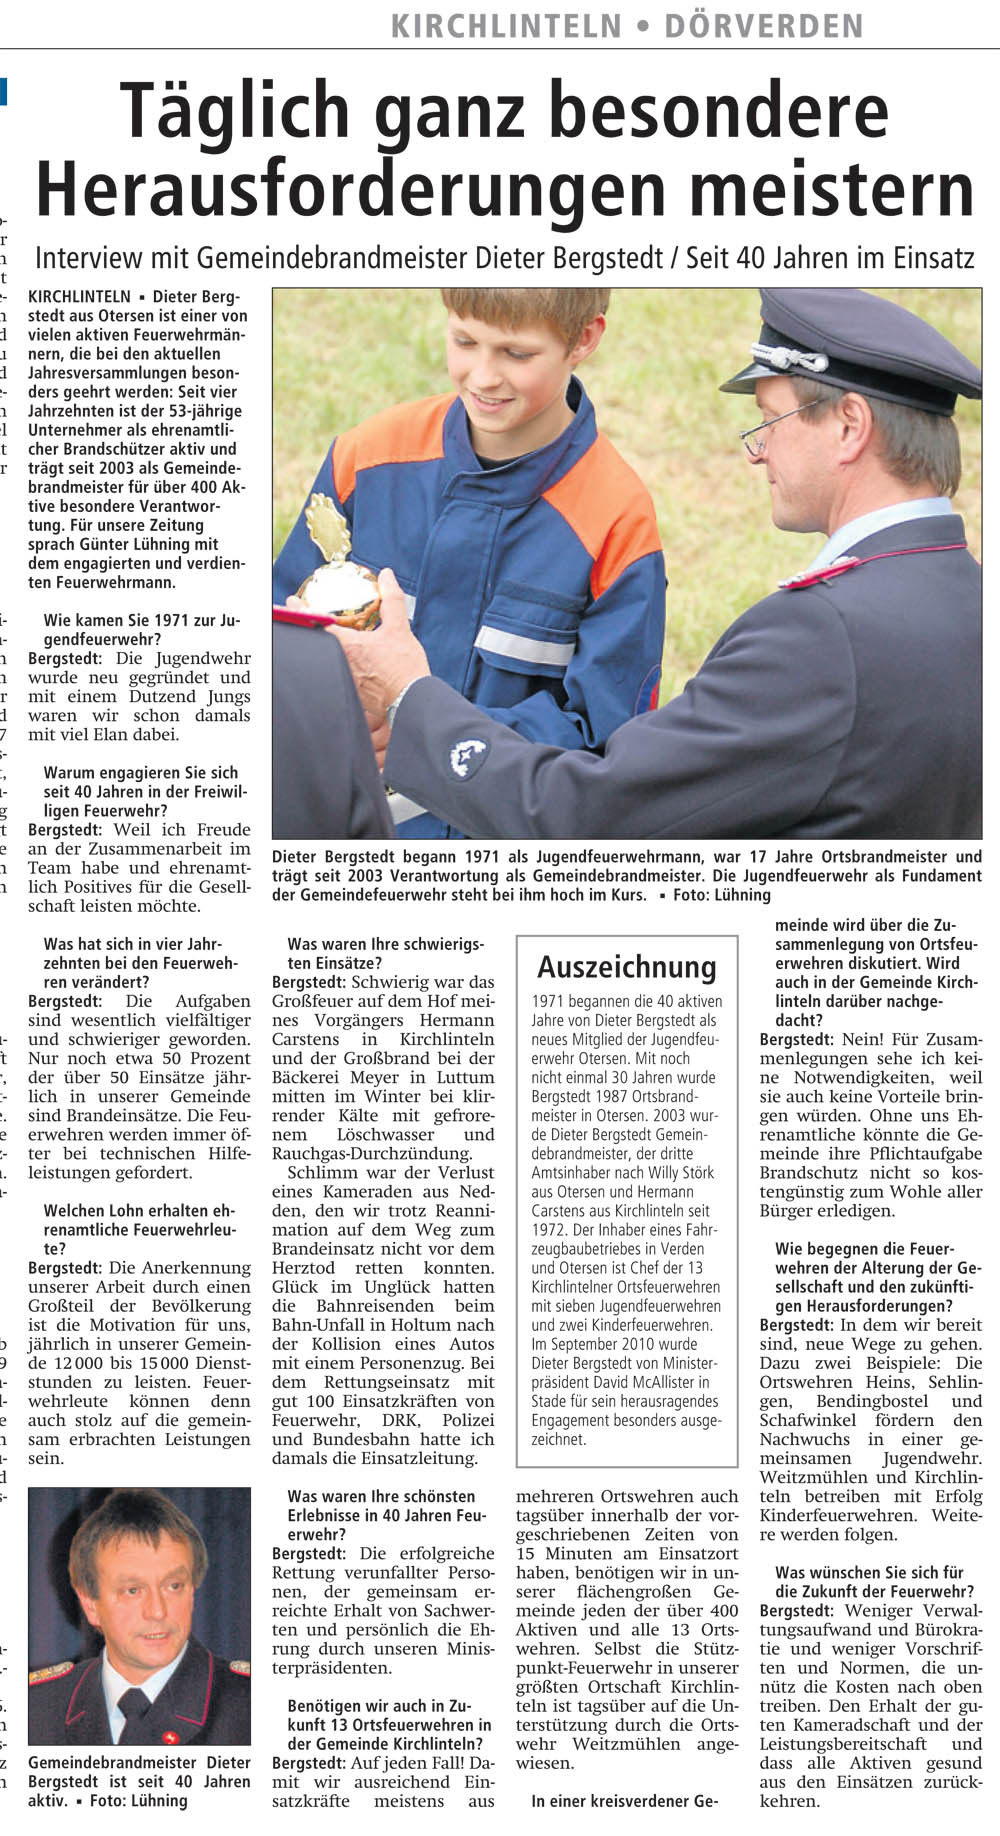 Tageszeitung, Ausgabe: 30, vom: 04.02.2012